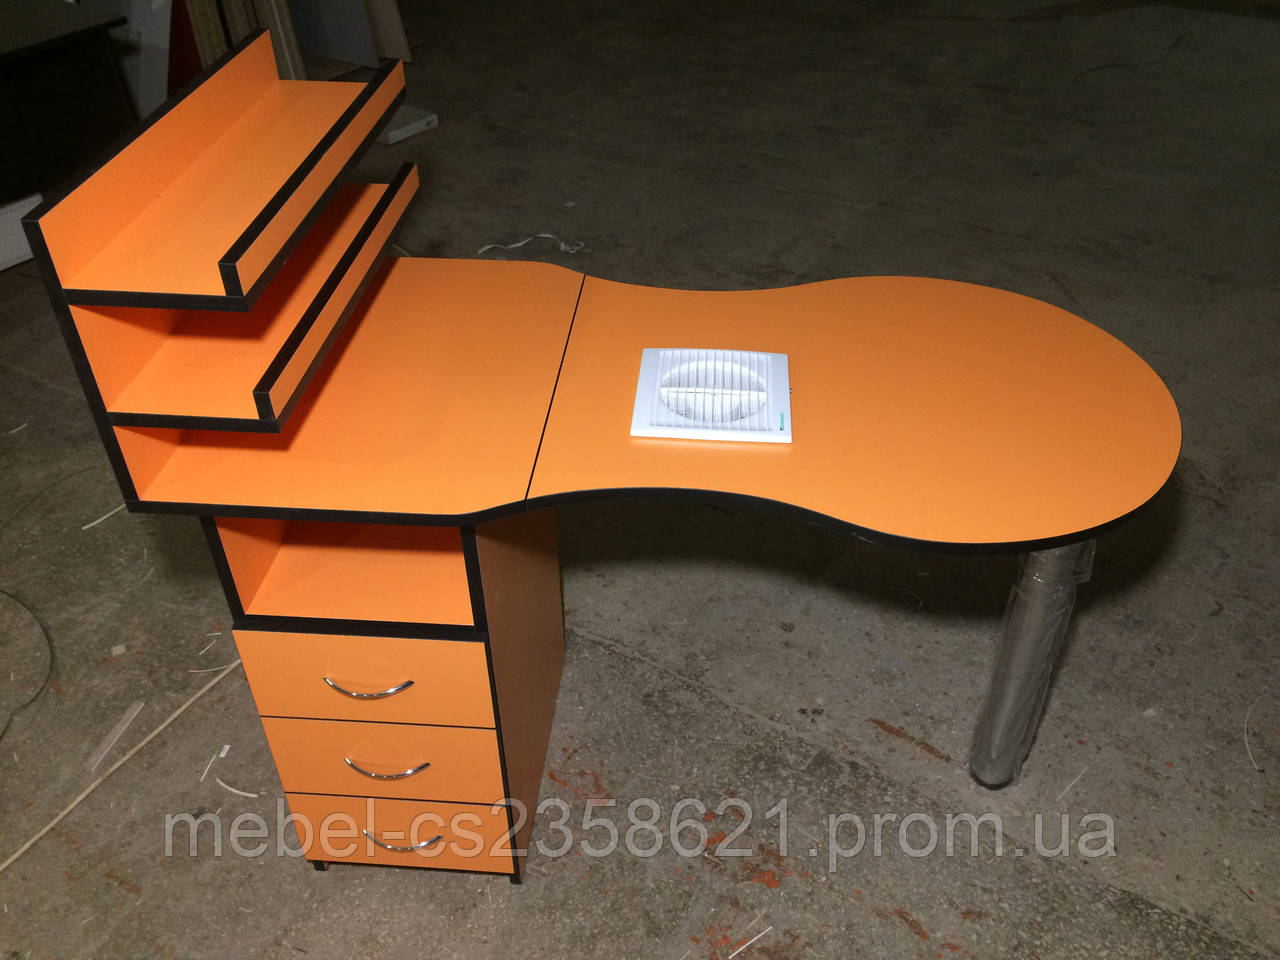 Манікюрний стіл з витяжкою апельсиновий колір